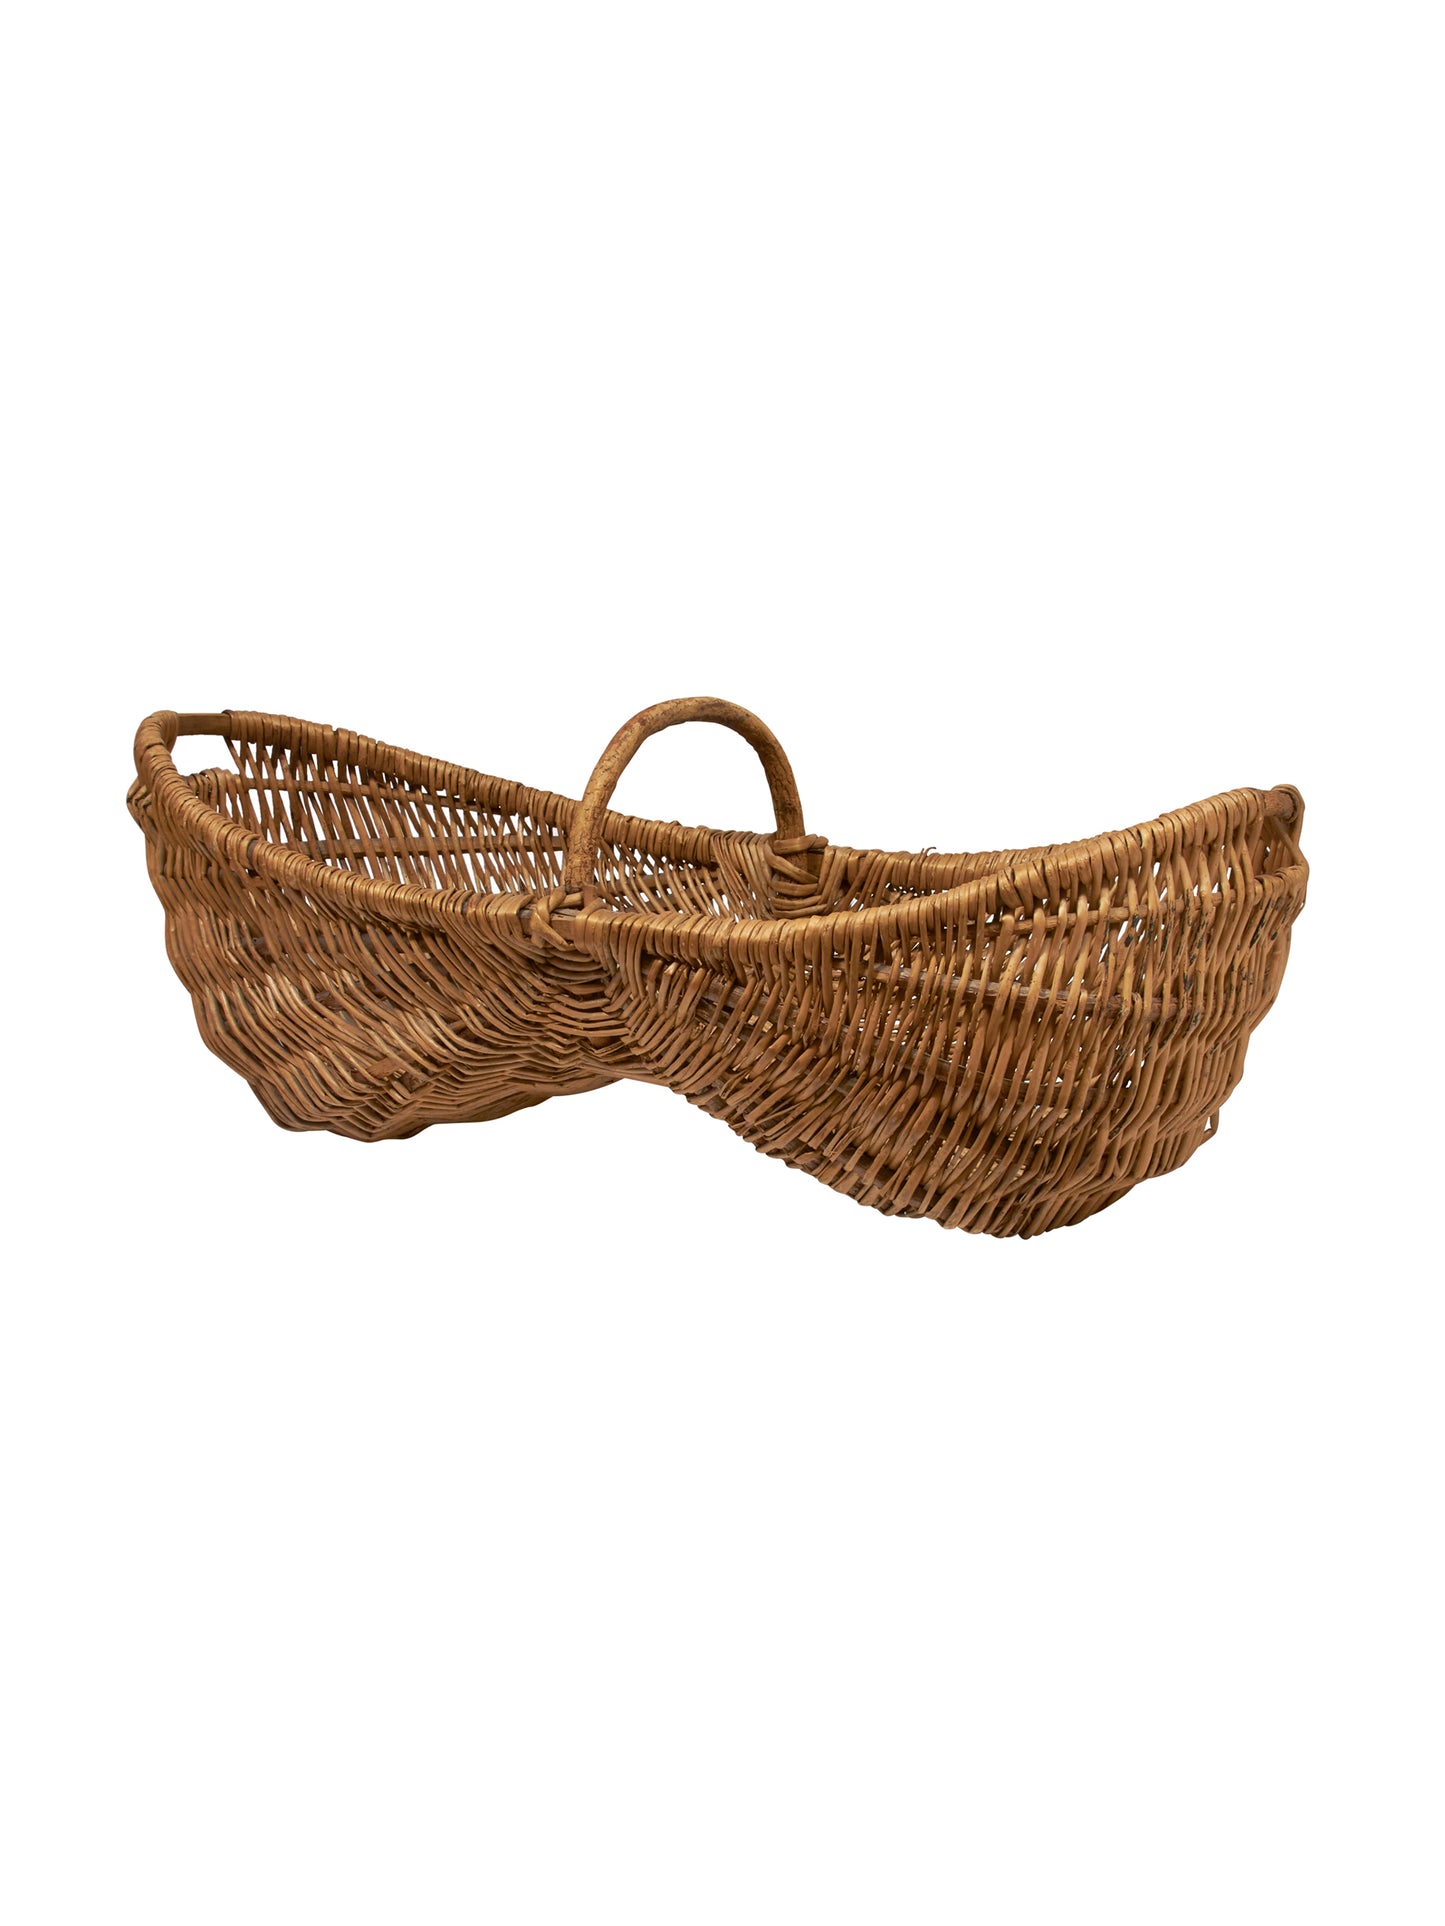 Vintage 1890s Vintner's Harvesting Basket